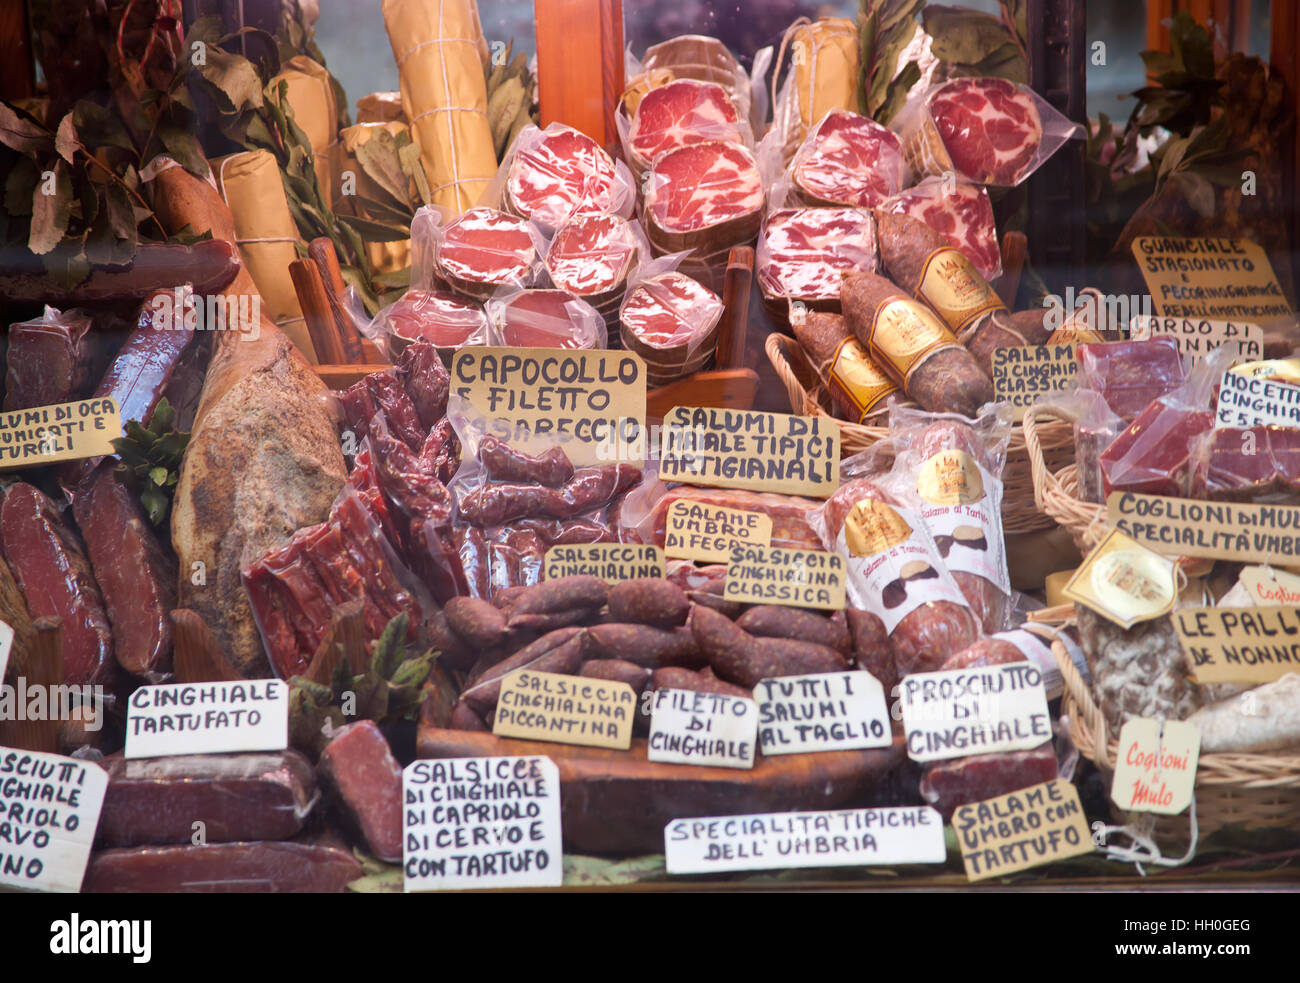 Orvieto, Italia - 16 Marzo 2014: delicatessen del negozio finestra che mostra il più tipico prodotto a base di carne di maiale e di carne bovina in Orvieto. Foto Stock